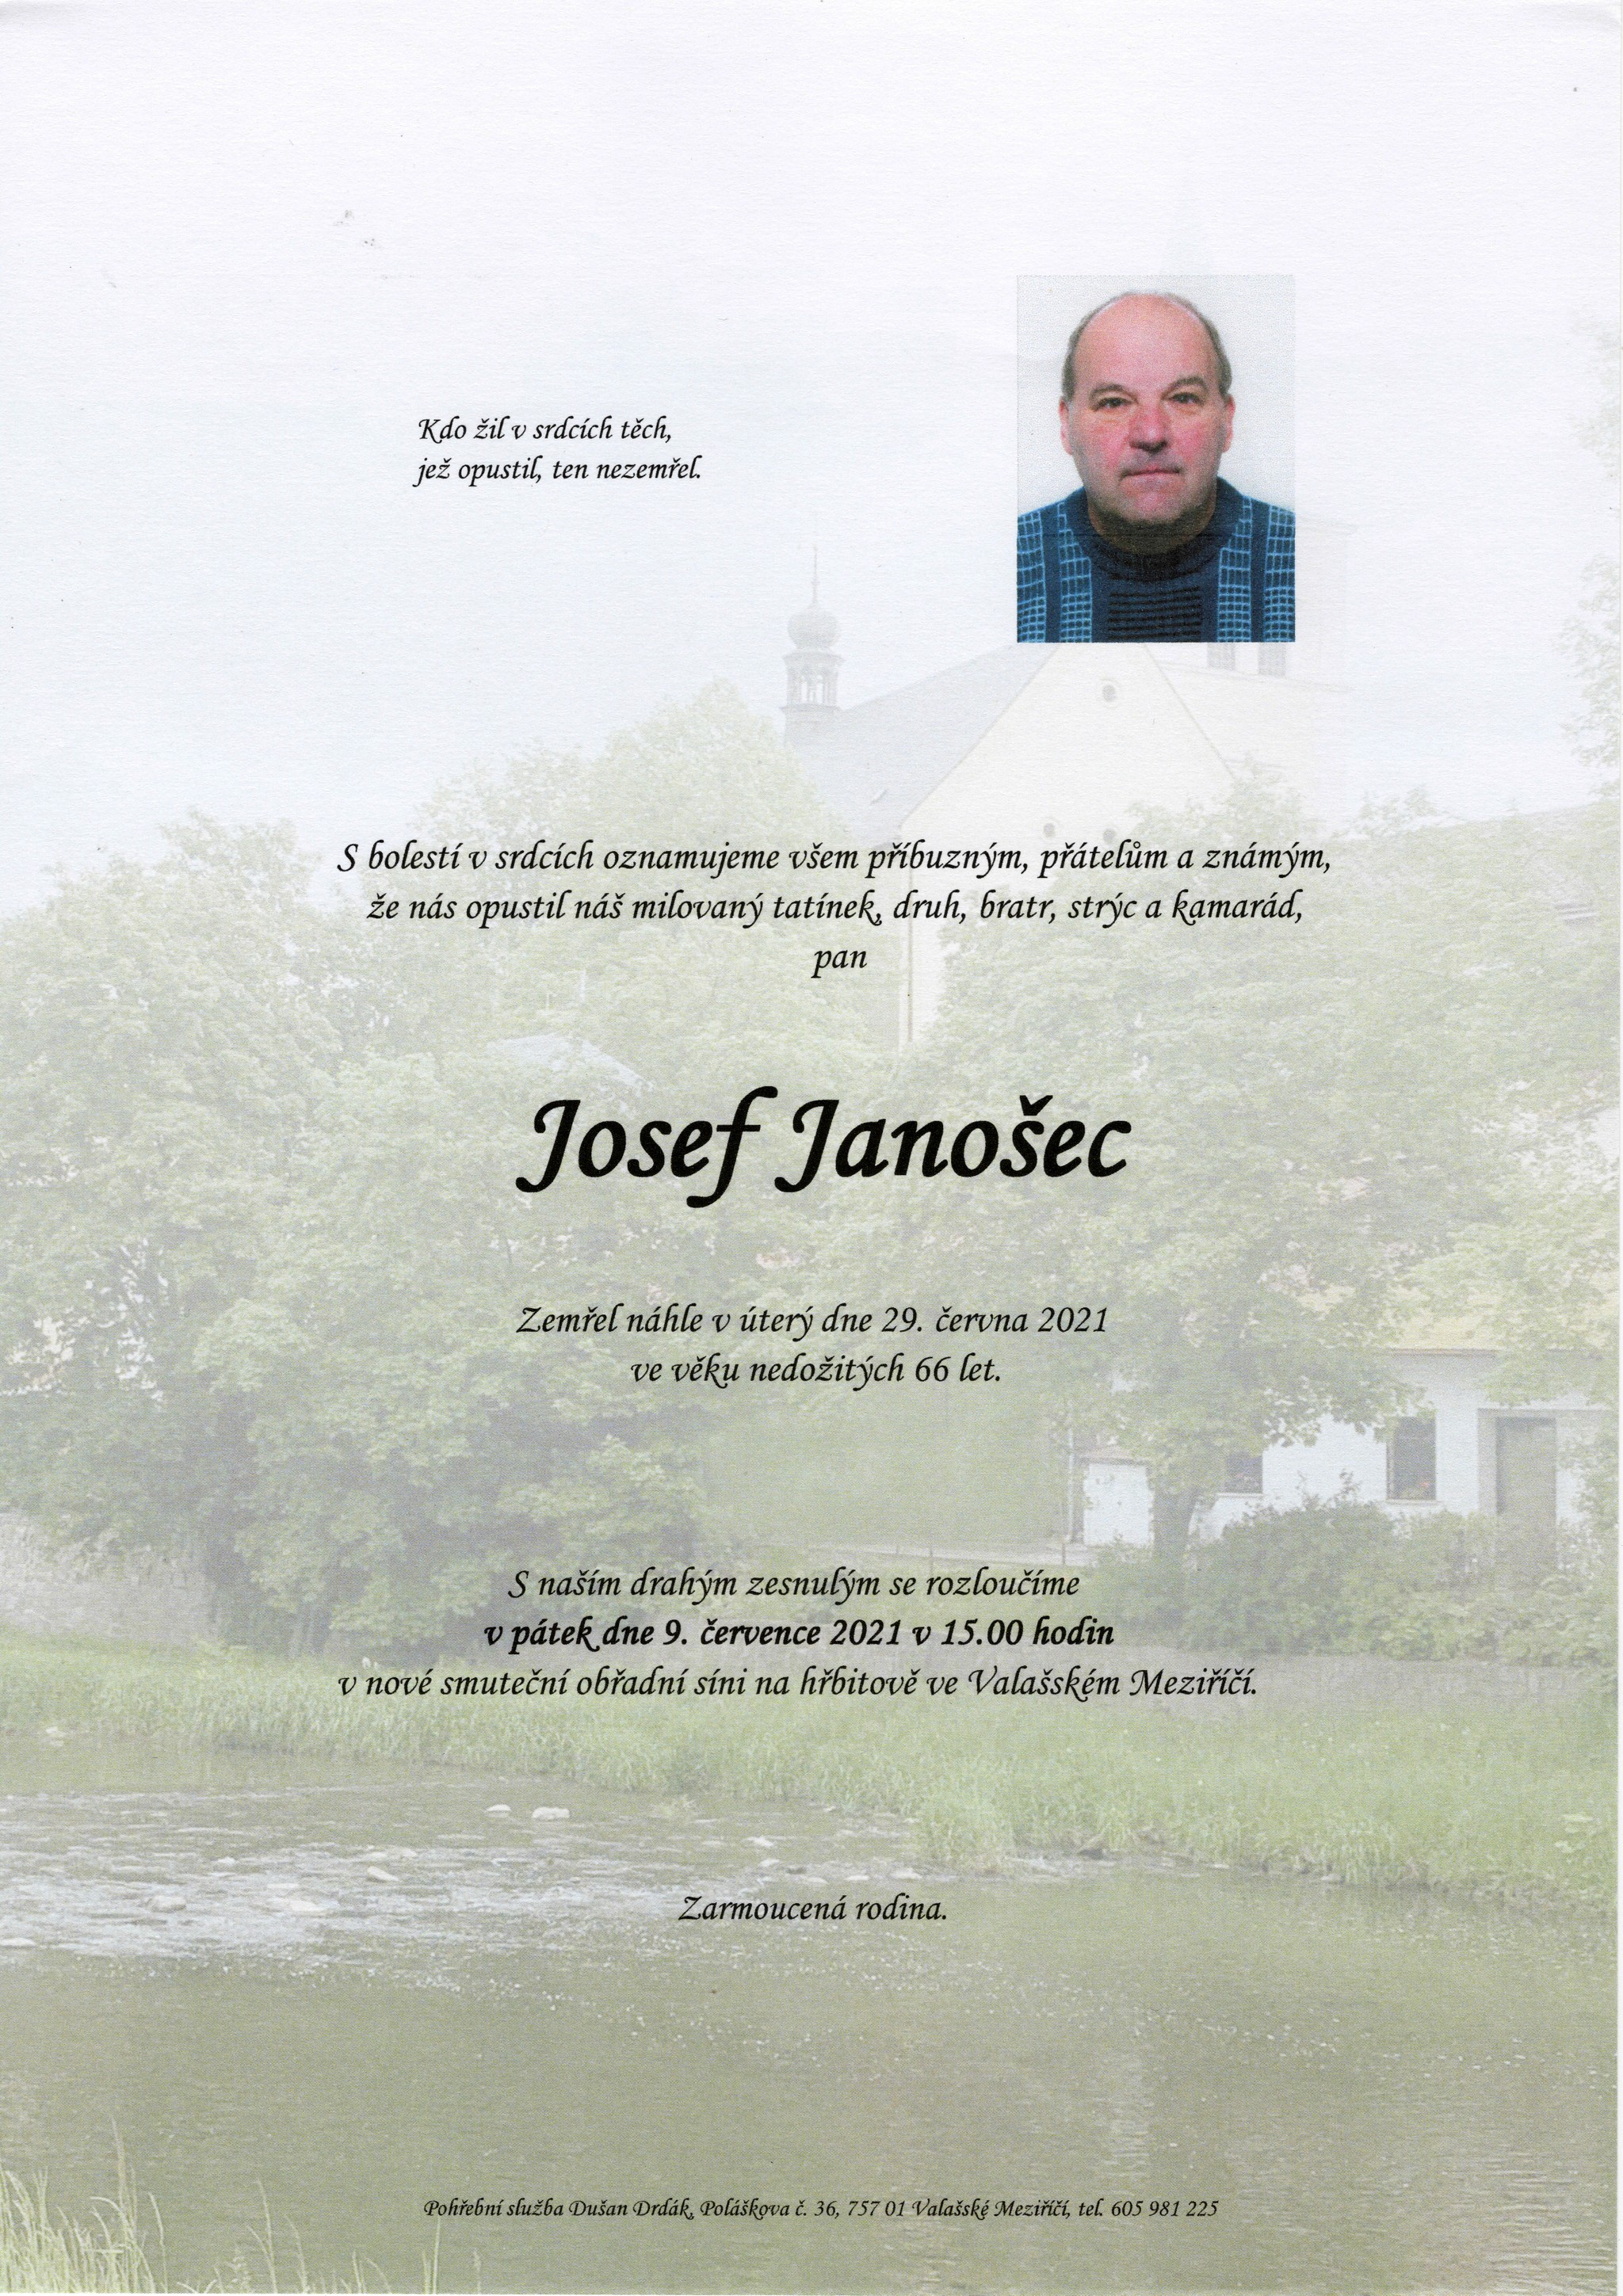 Josef Janošec